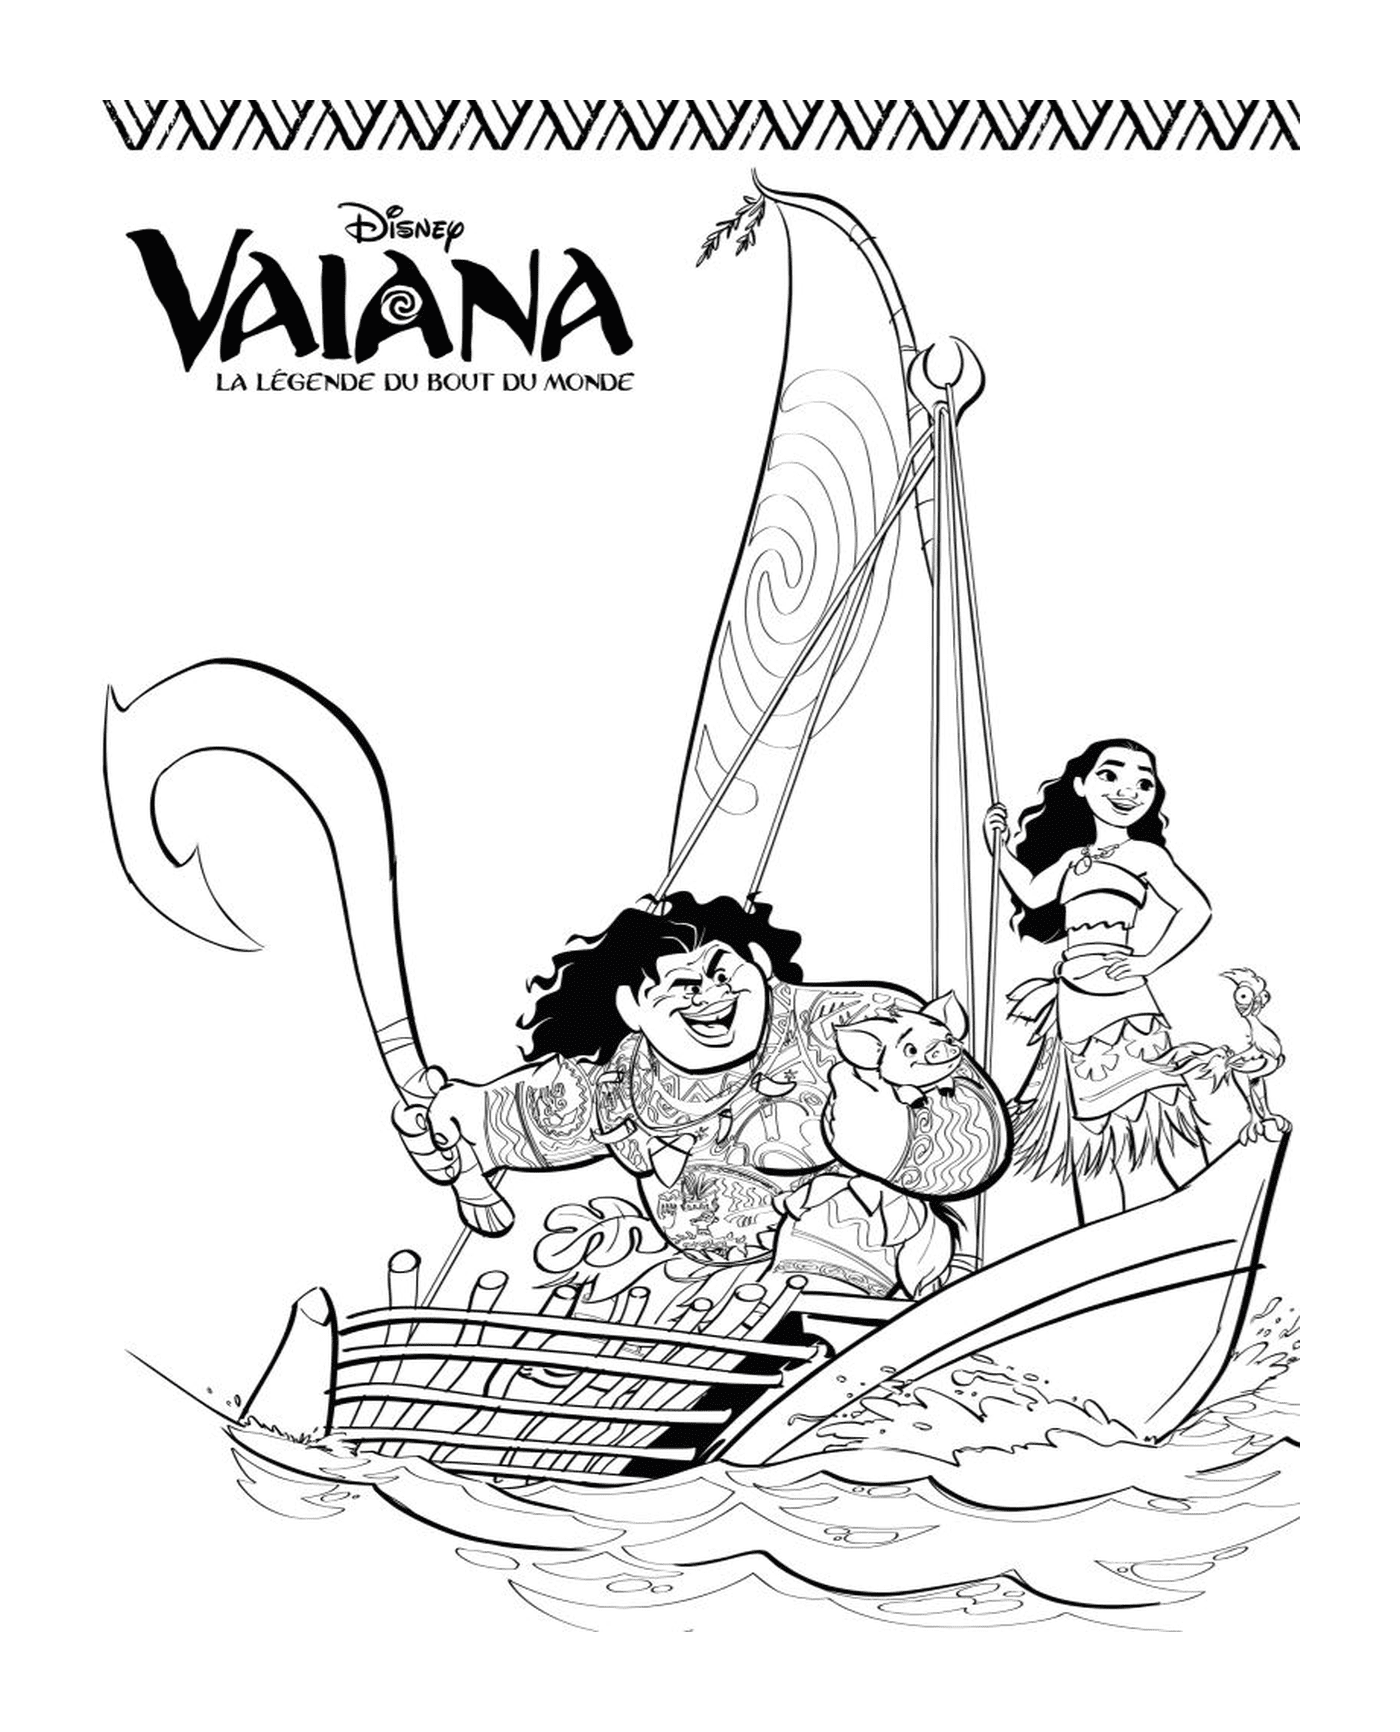  Vaiana und Maui auf einem Segelboot 